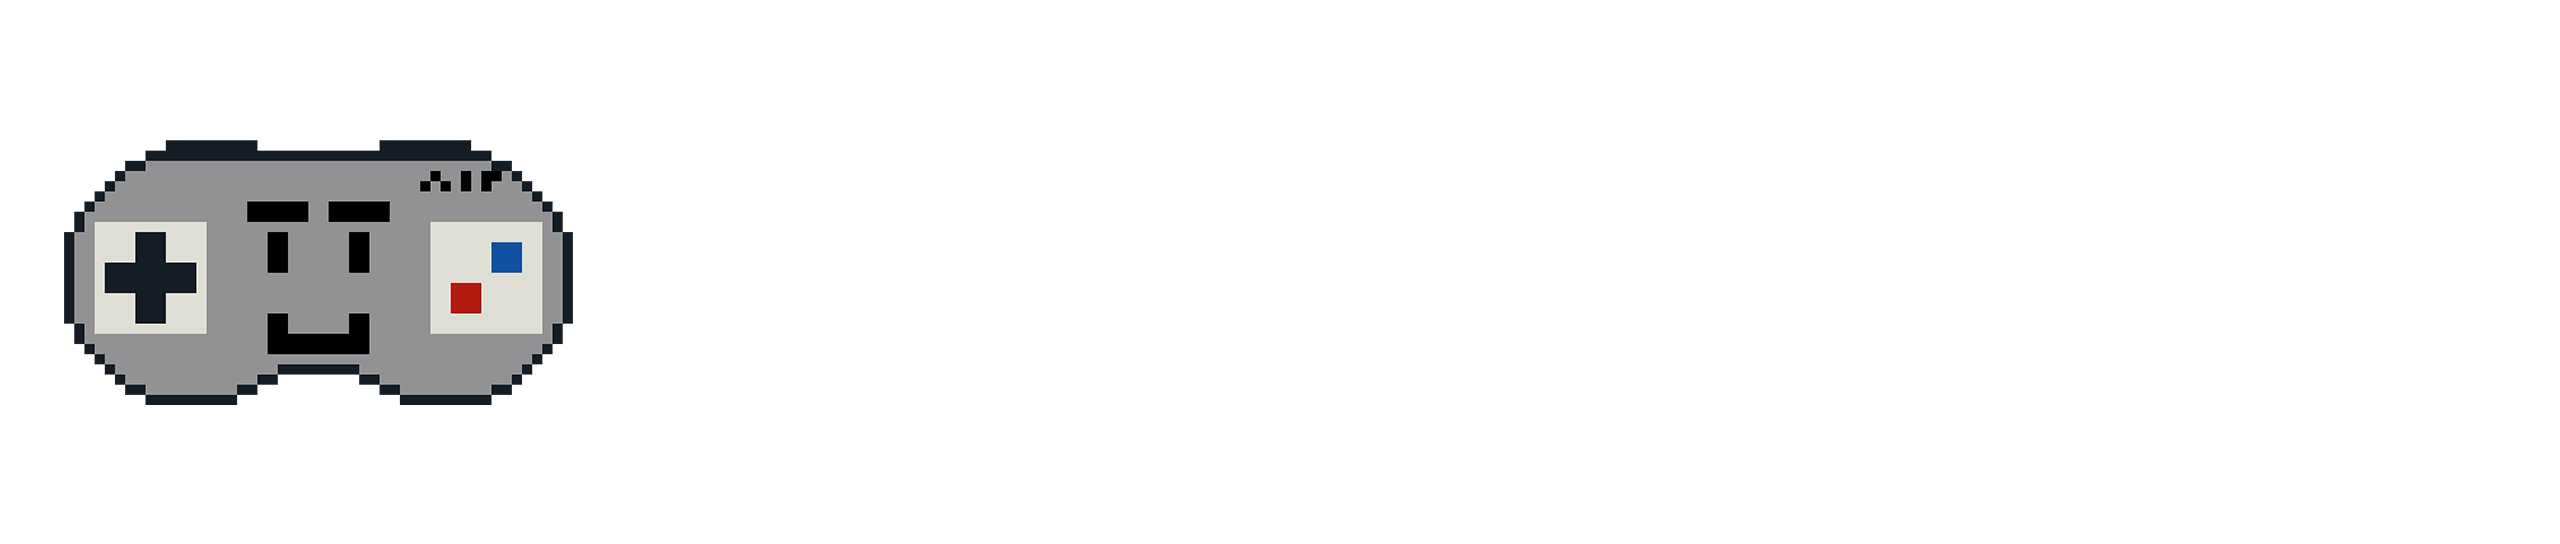 Lockyz Media Merch